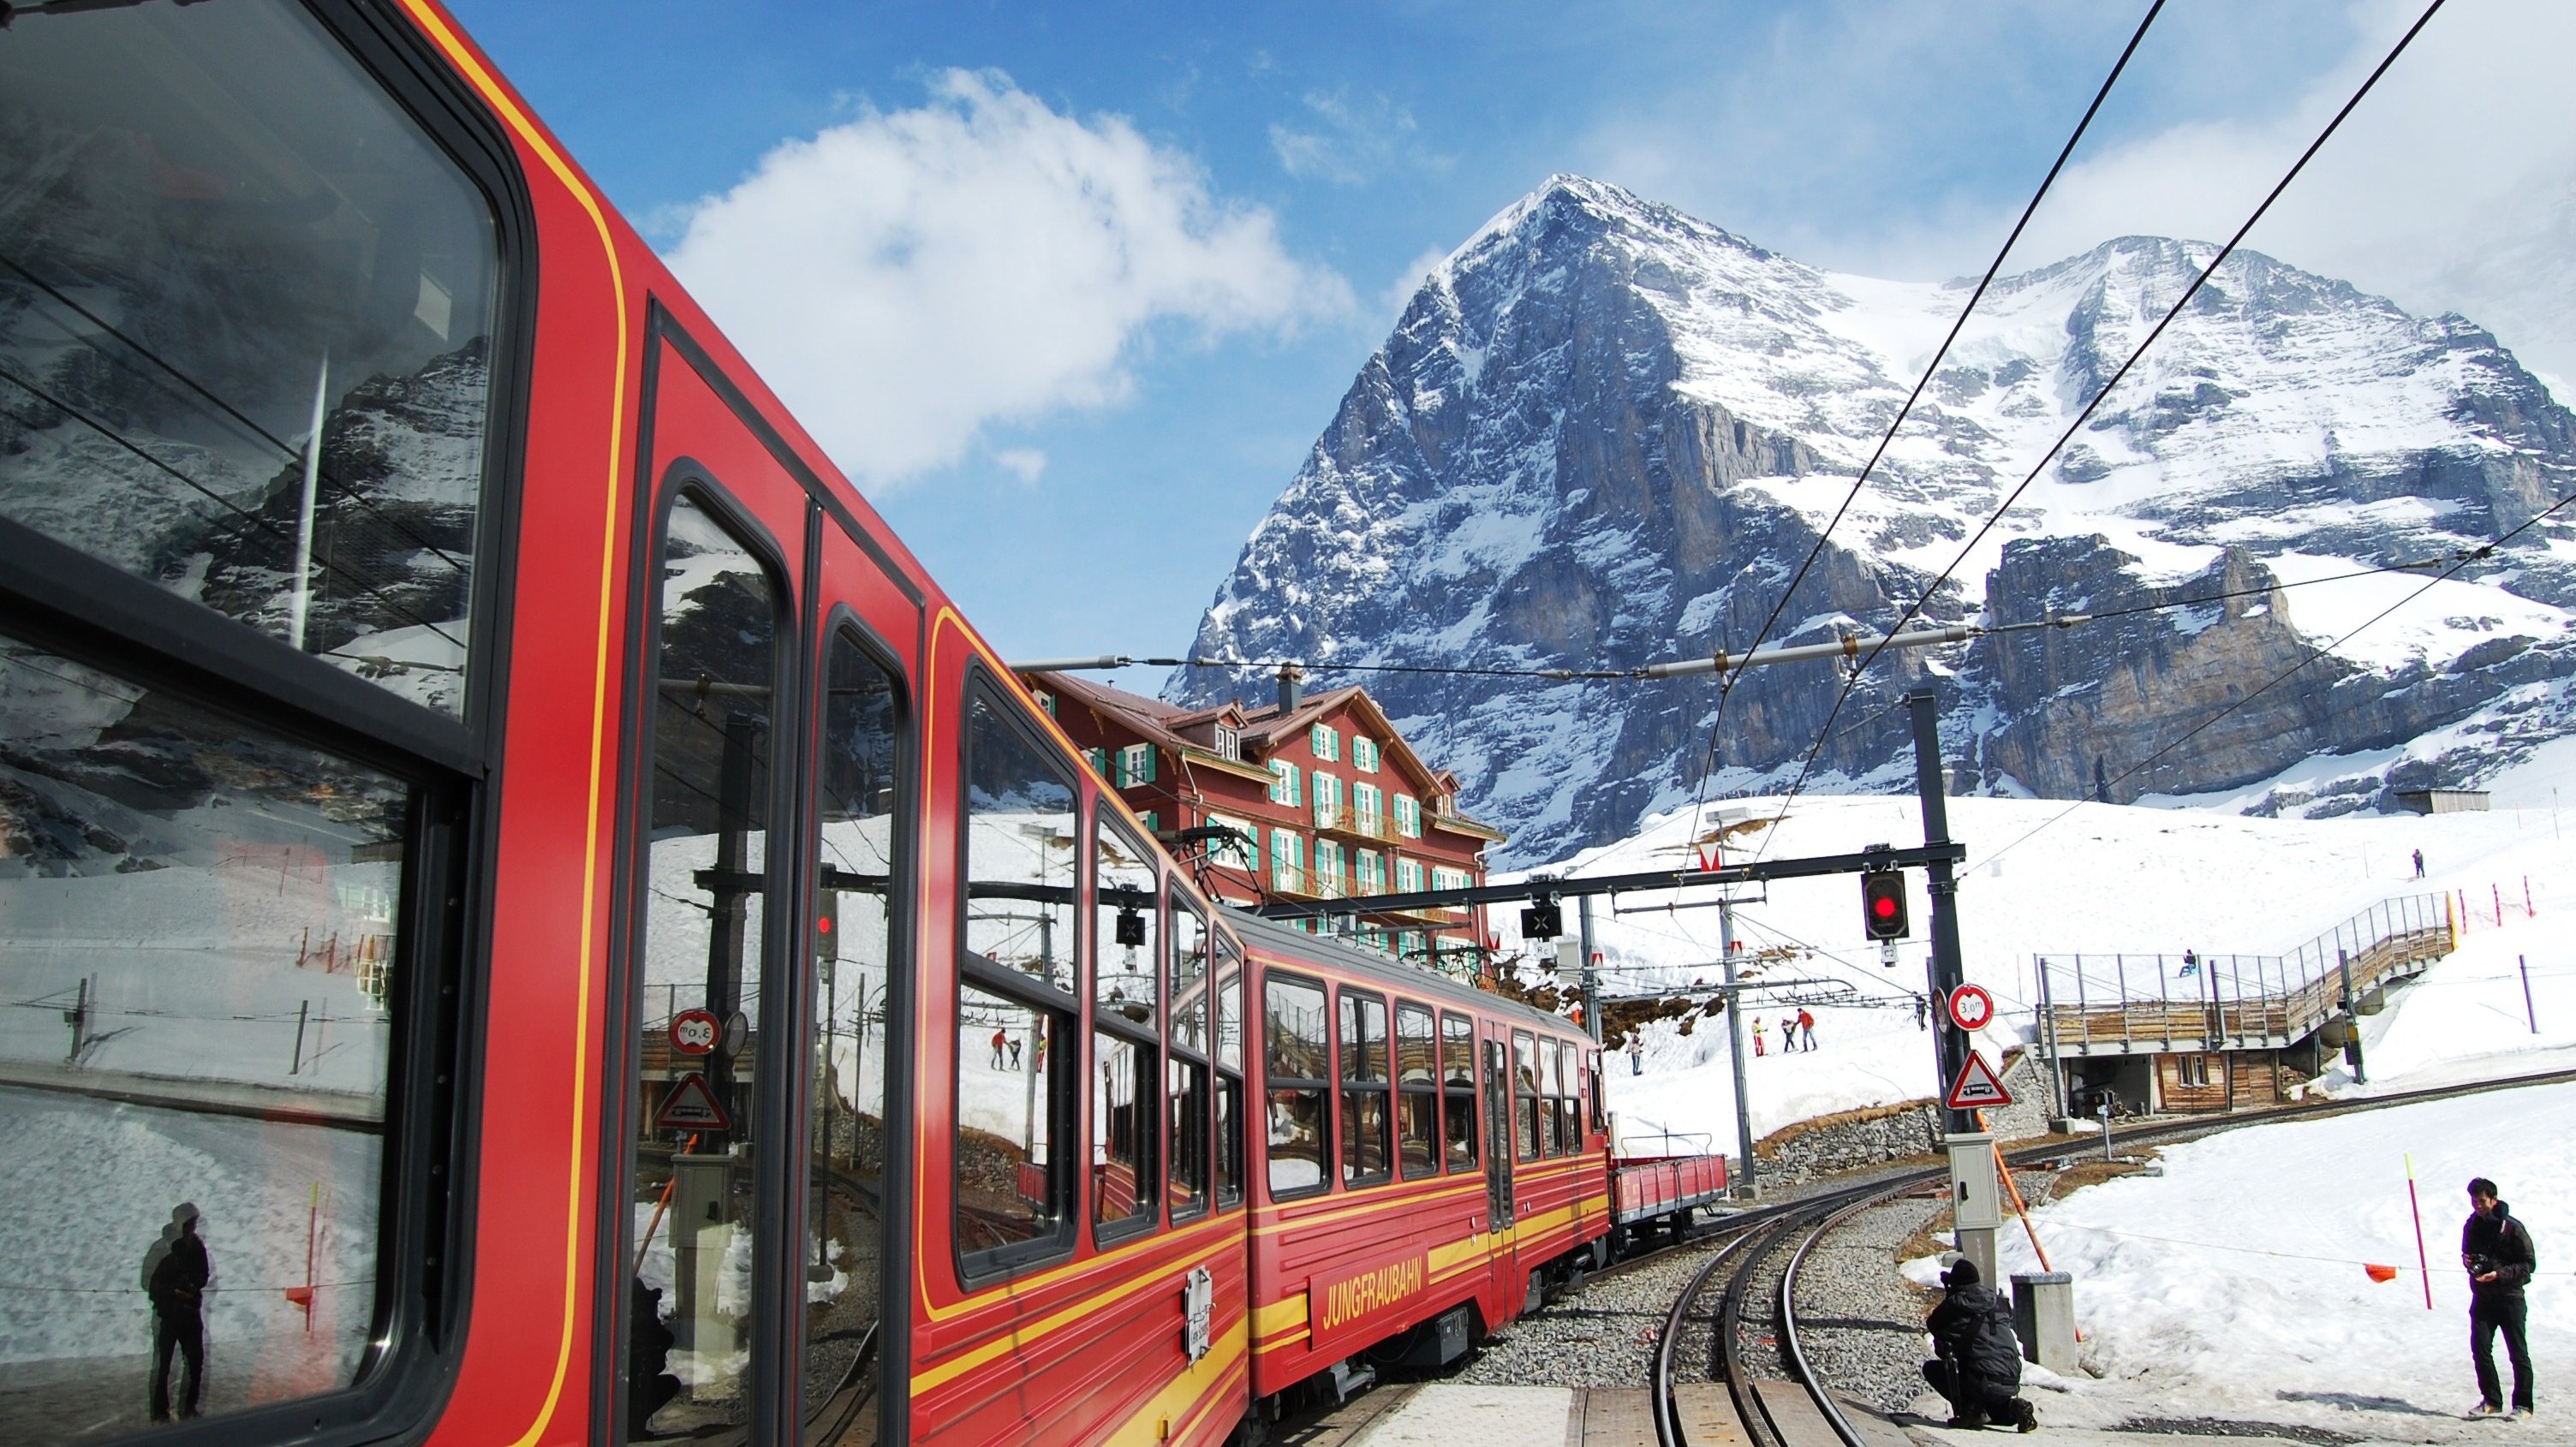 jungfraubahn, At, Kleine, Sheidegg, Switzerland, By, North, Face, Of, Eiger Wallpaper